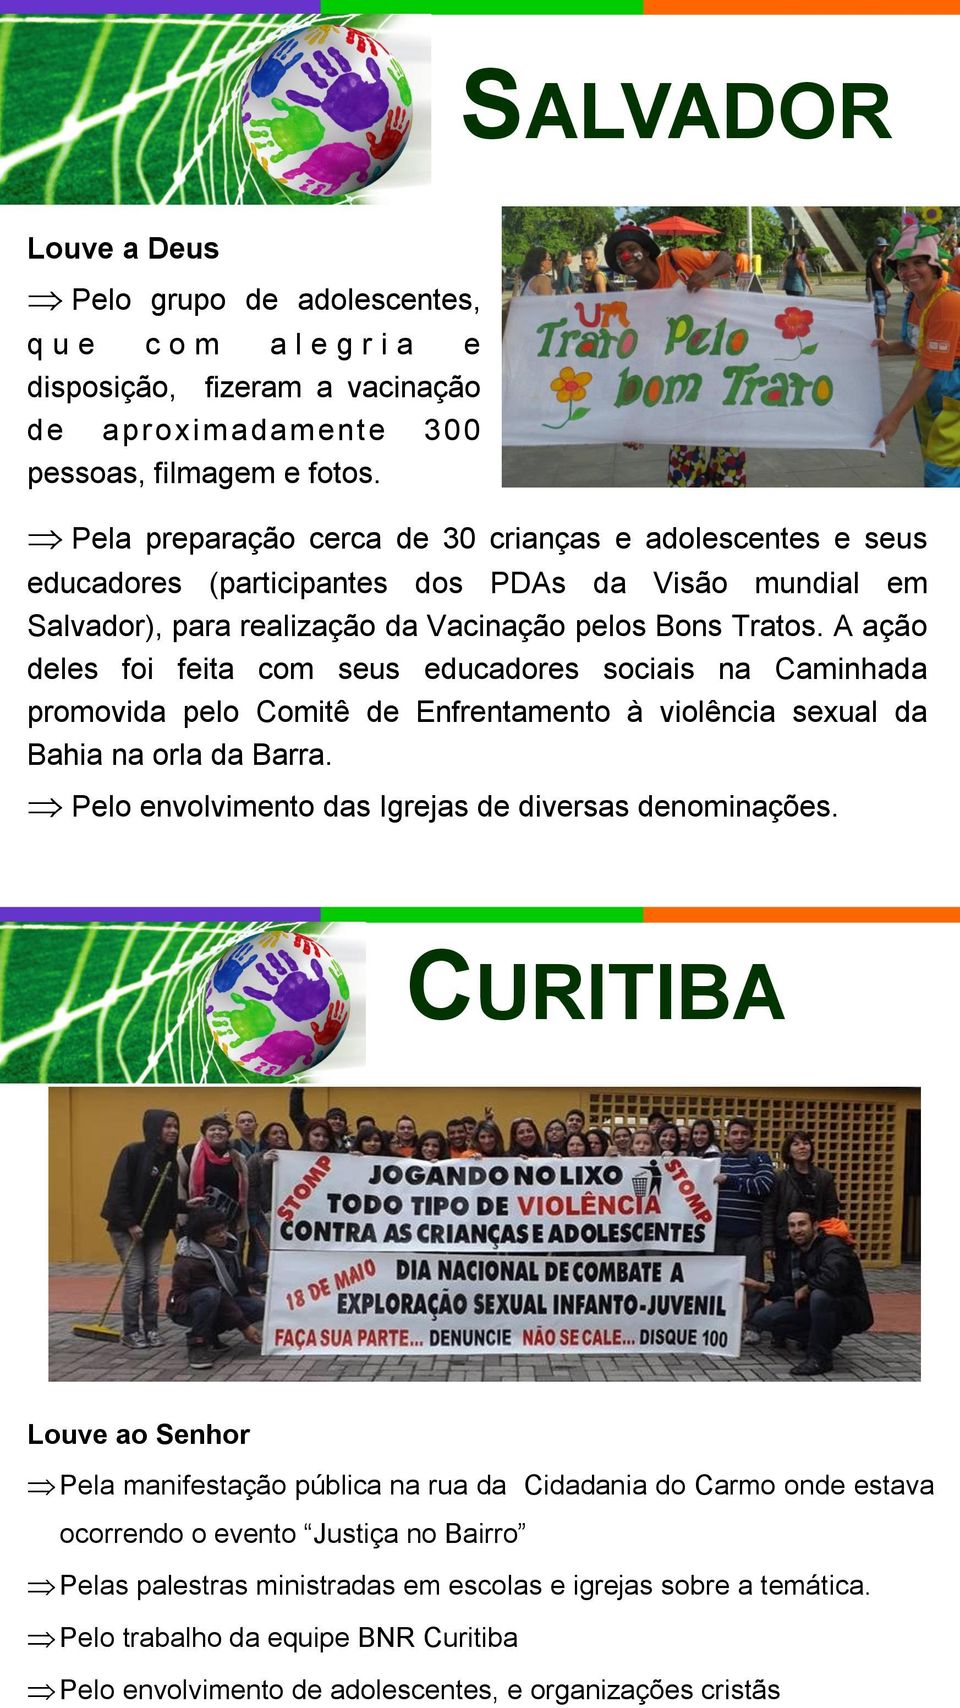 A ação deles foi feita com seus educadores sociais na Caminhada promovida pelo Comitê de Enfrentamento à violência sexual da Bahia na orla da Barra.